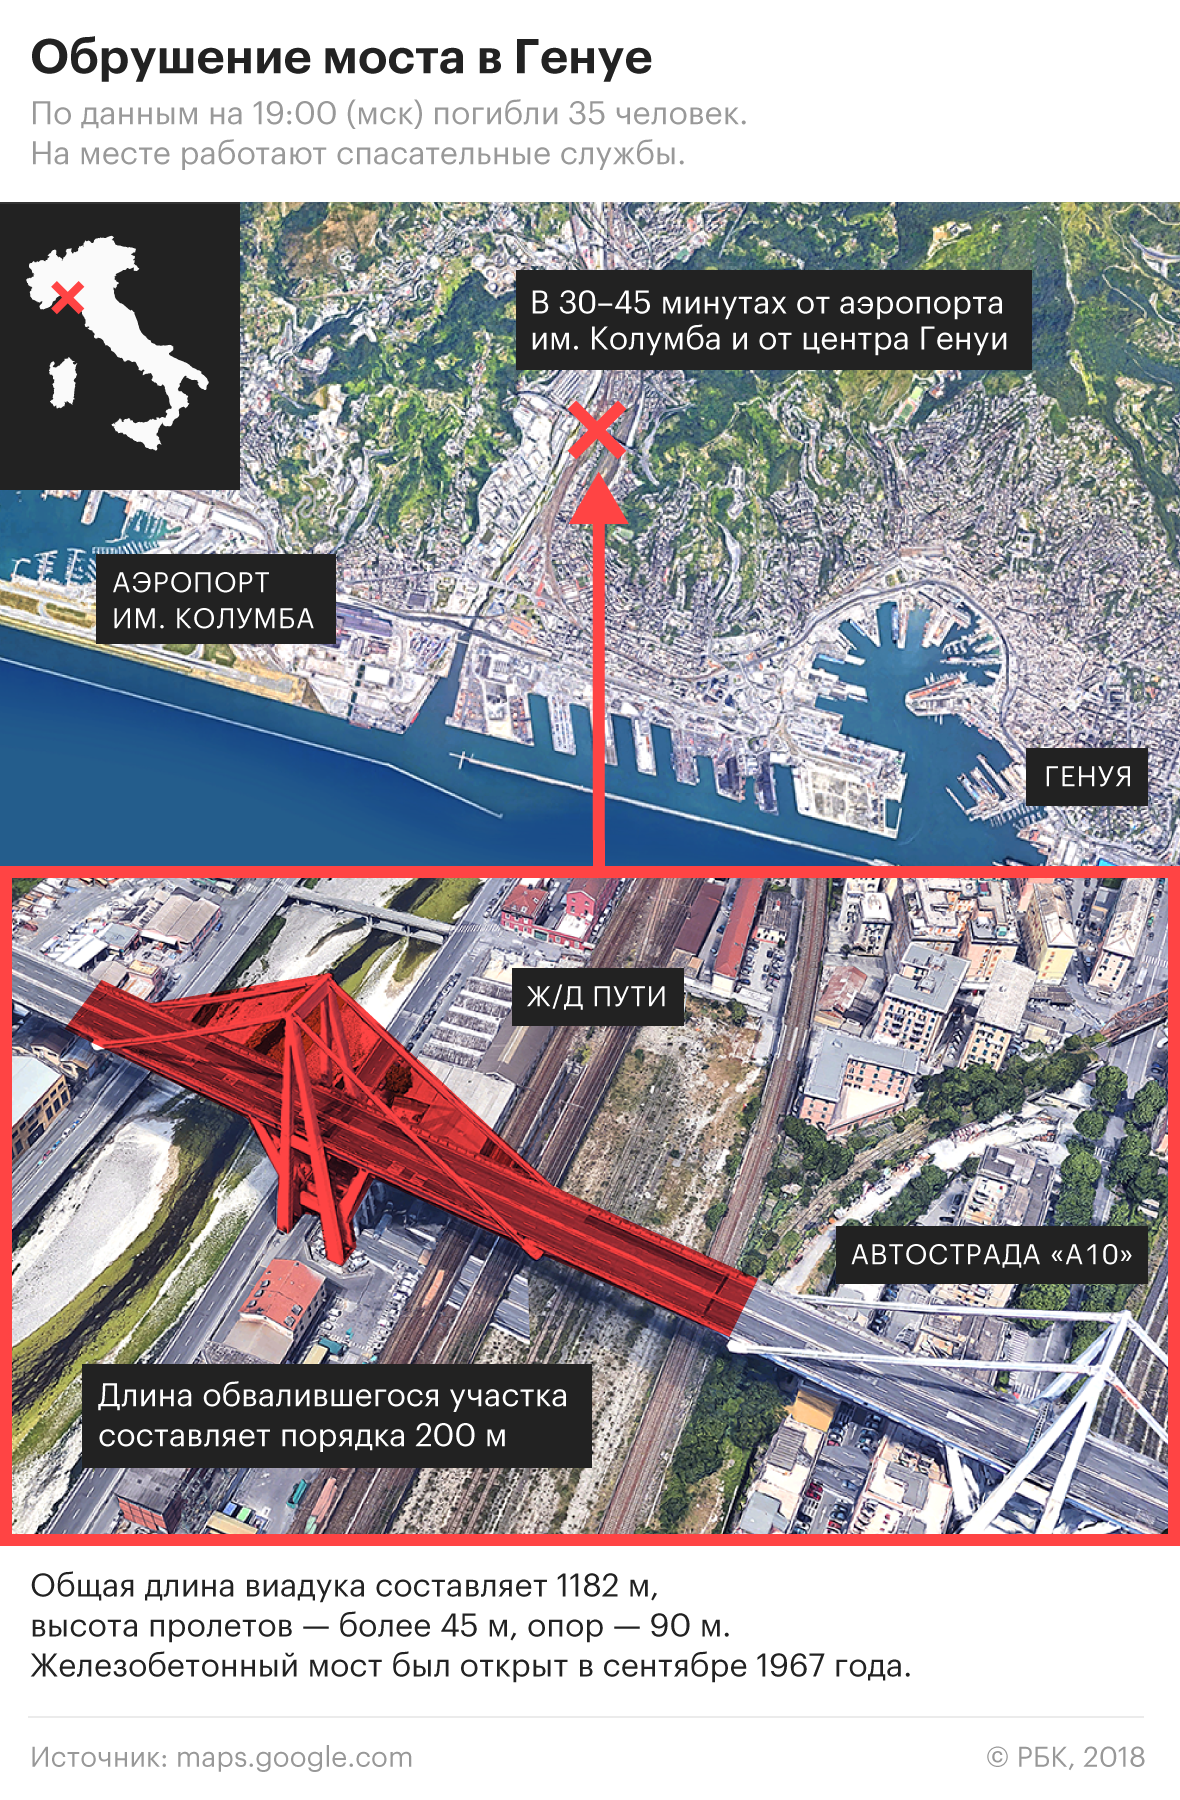 СМИ назвали вероятные причины обрушения моста в Генуе